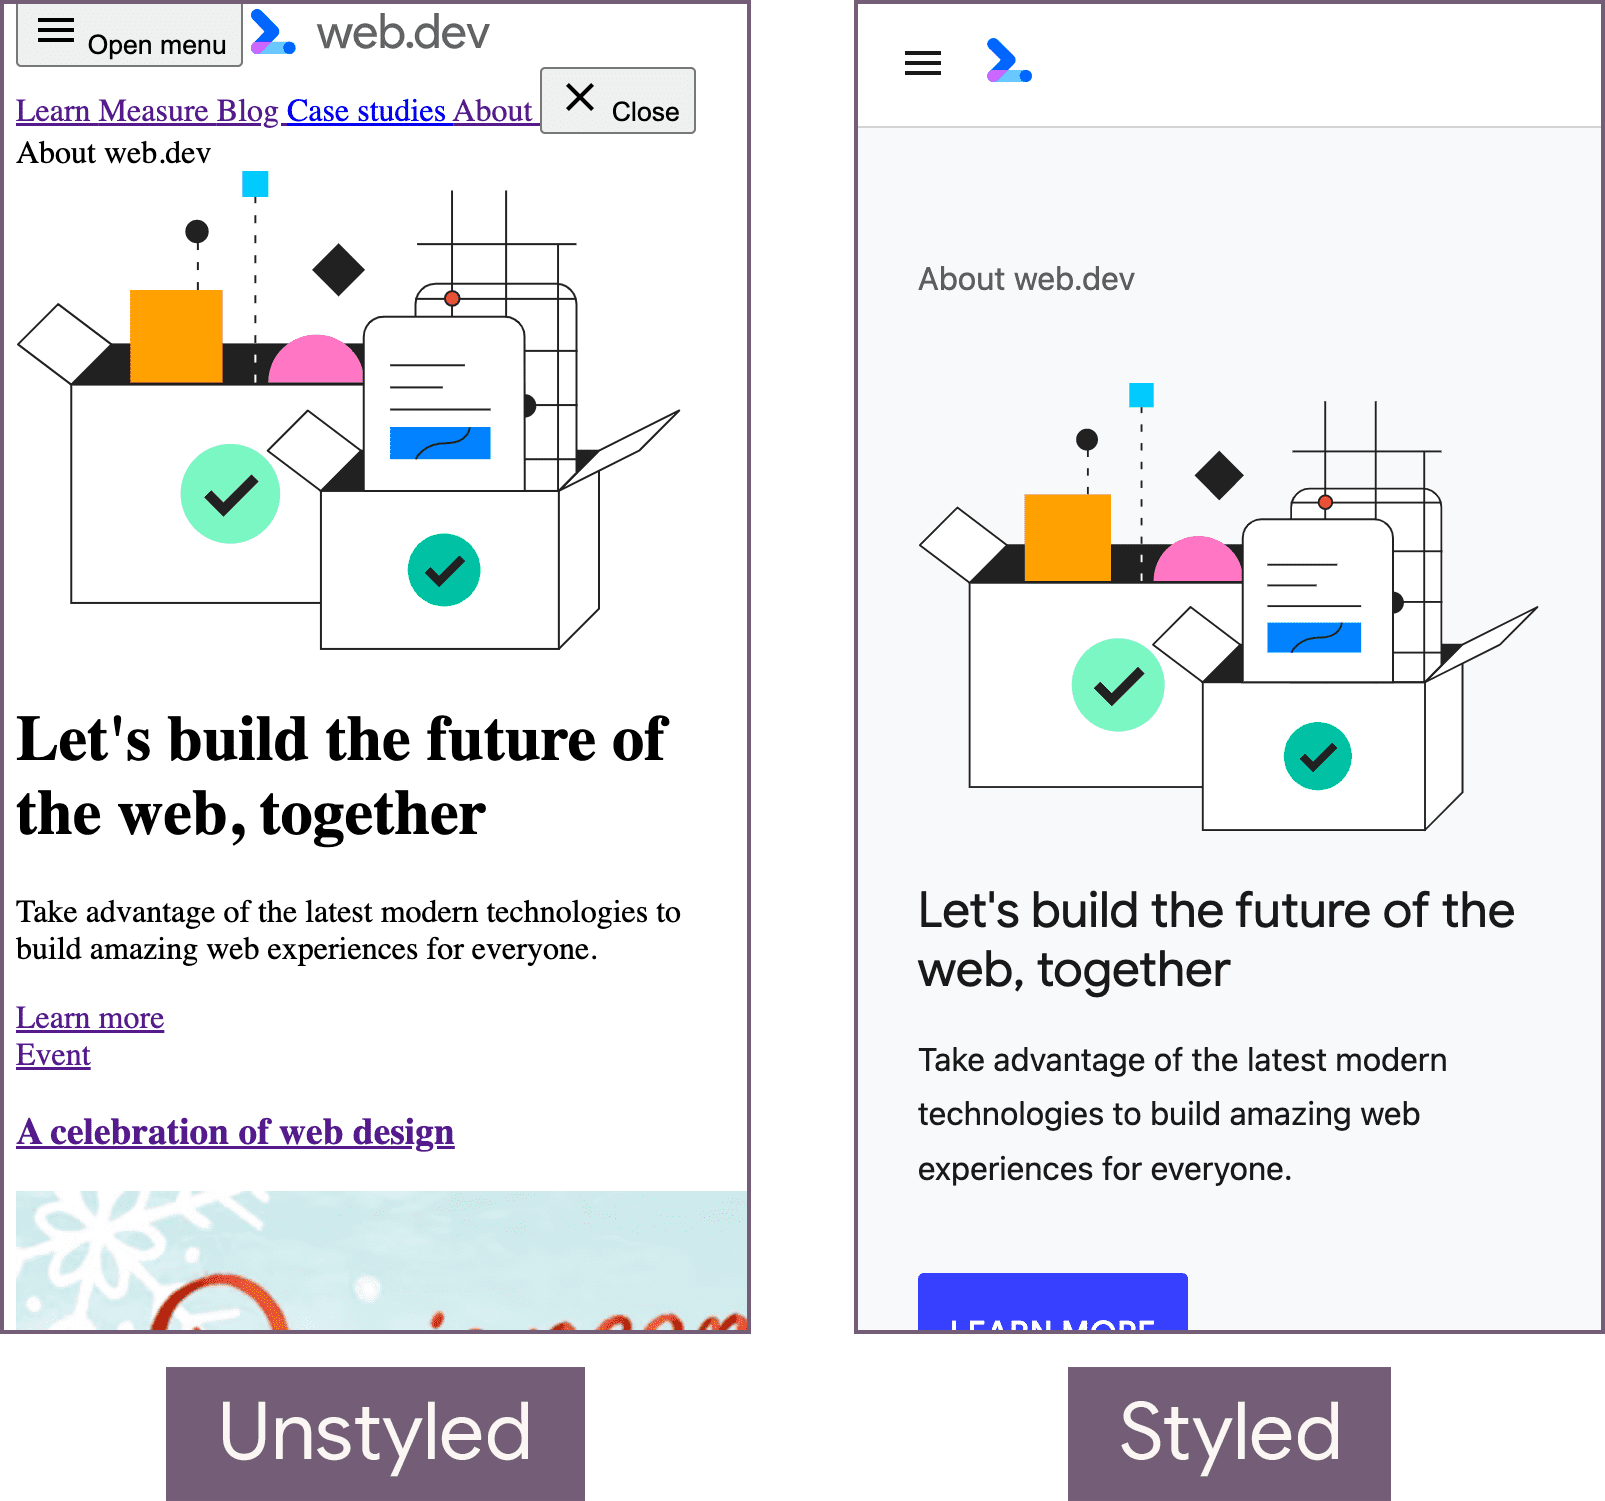 スタイルが設定されていない状態の web.dev のホームページ（左）とスタイル設定された状態（右）